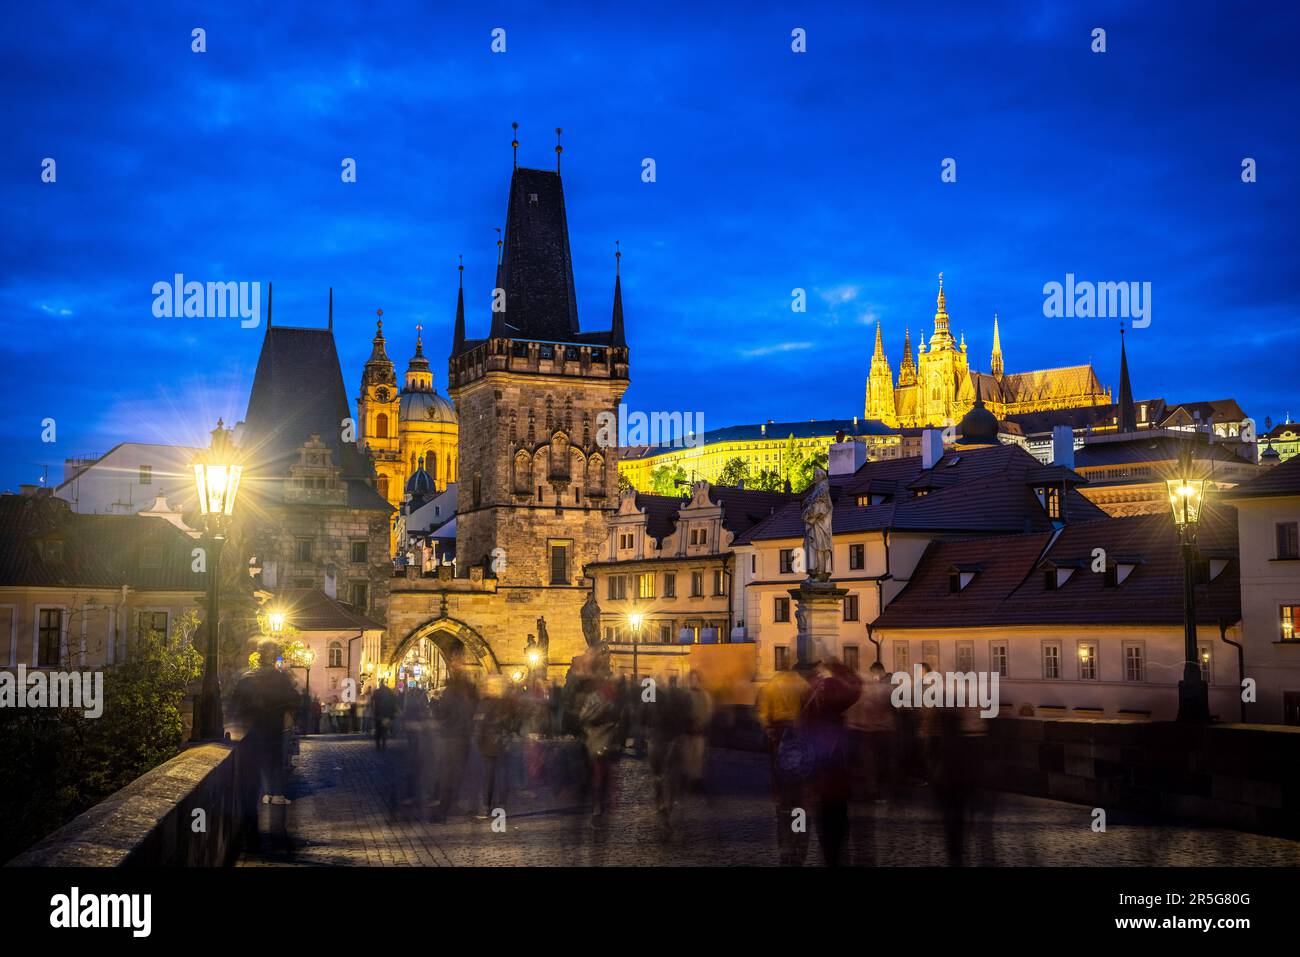 Praga: Vista sulla zona di Mala Strana con la torre del ponte occidentale del ponte carlo, St Nicholas e St. Cattedrale di Vito durante l'ora blu - passe Foto Stock